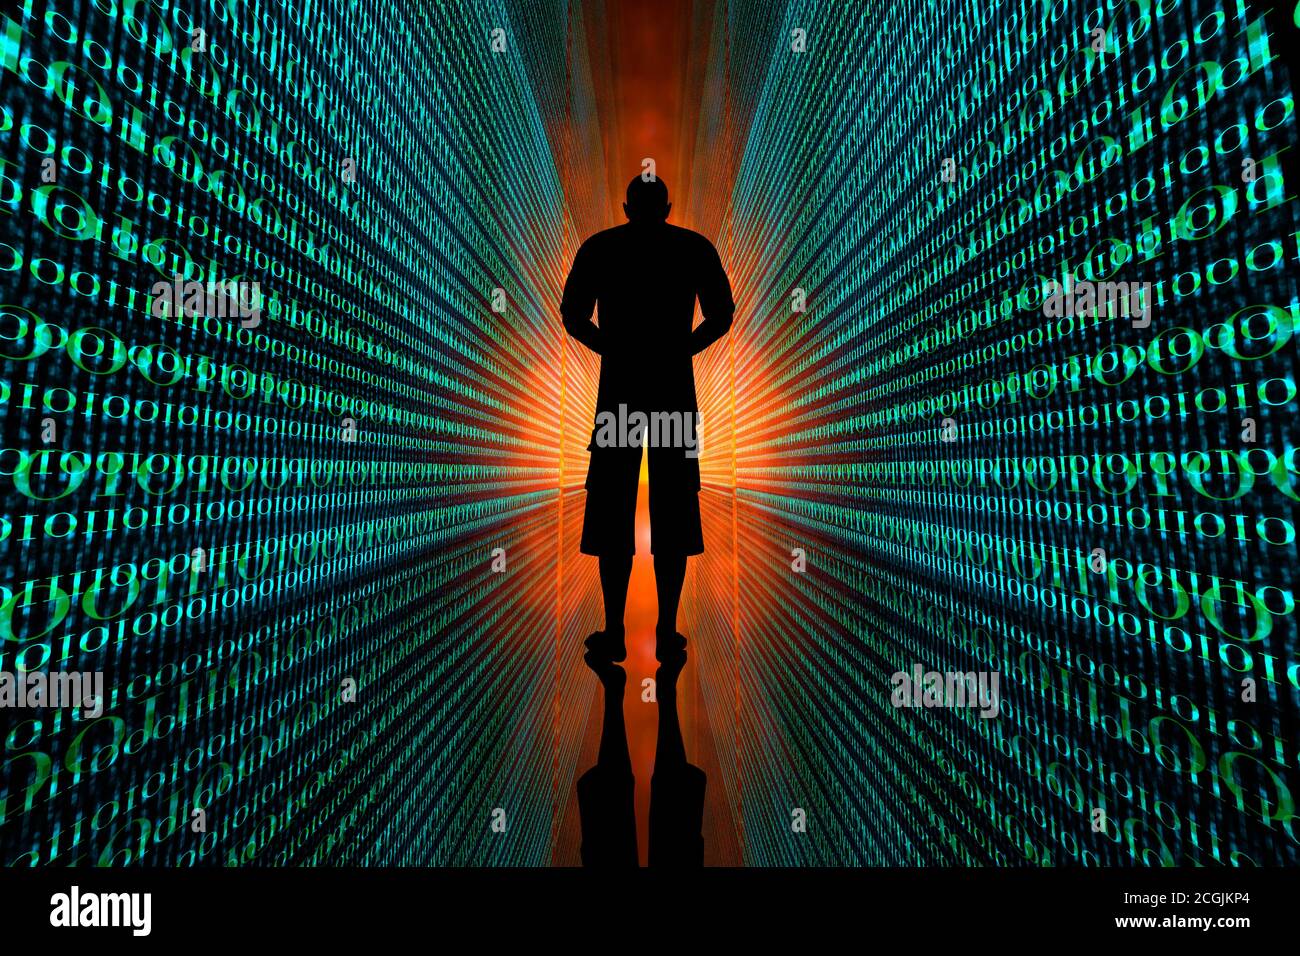 Illustrazione 3D di un uomo che si trova tra infinite righe di codice che simboleggiano la sua identità digitale e le tracce di dati. Foto Stock